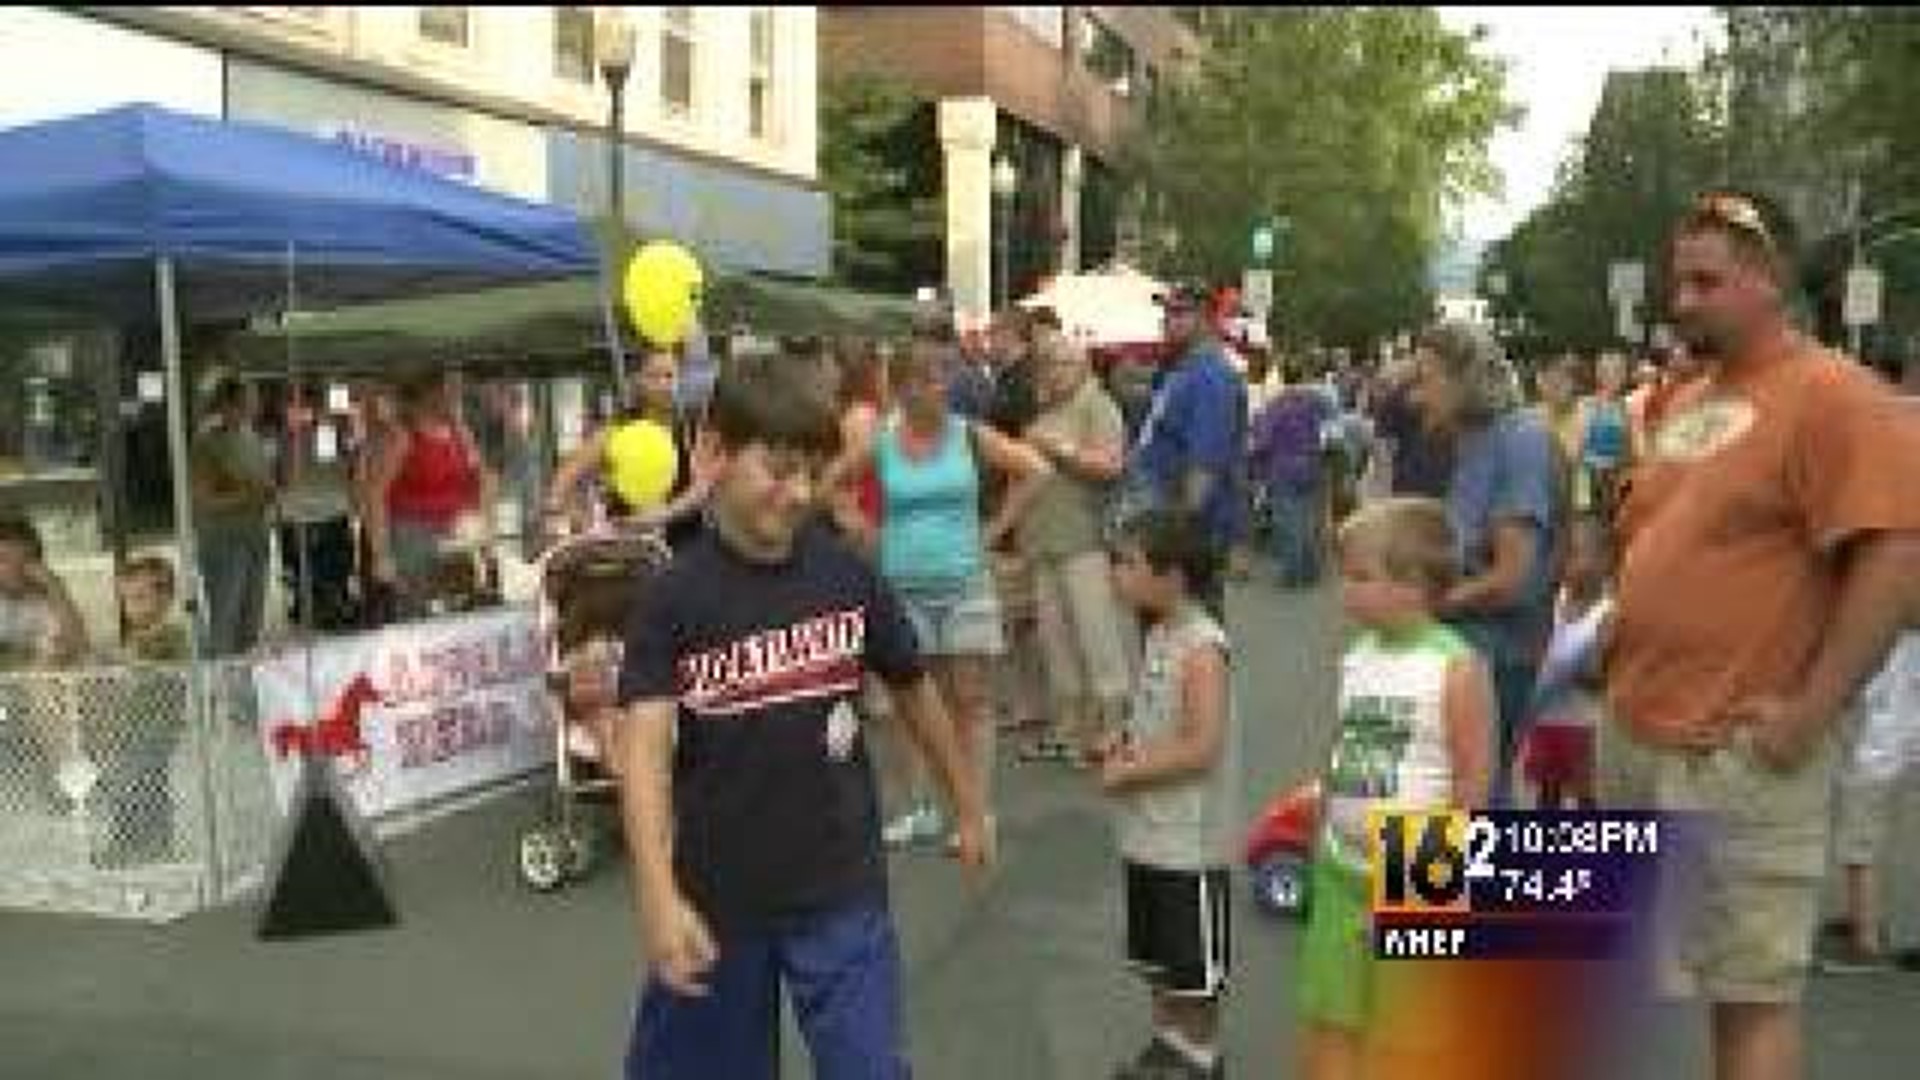 Street Festival For Little League Fans in Bill-Town